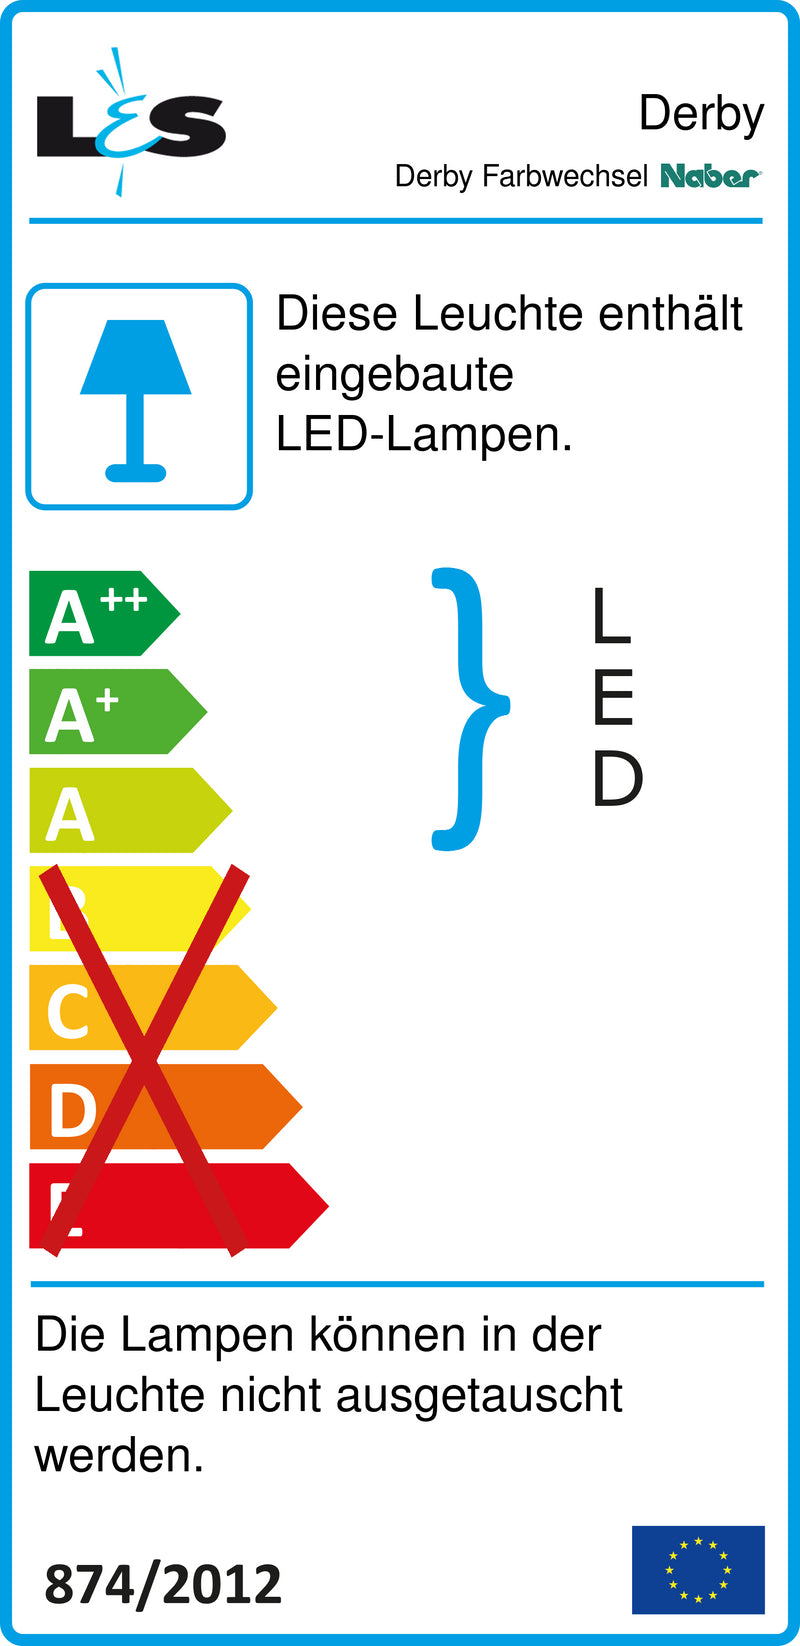 E-Label zu Zeichnung zu Derby Farbwechsel LED als Variante L 1150 mm, 66 LED, 15,84 W, alufarbig von Naber GmbH in der Kategorie Lichttechnik in Österreich auf conceptshop.at